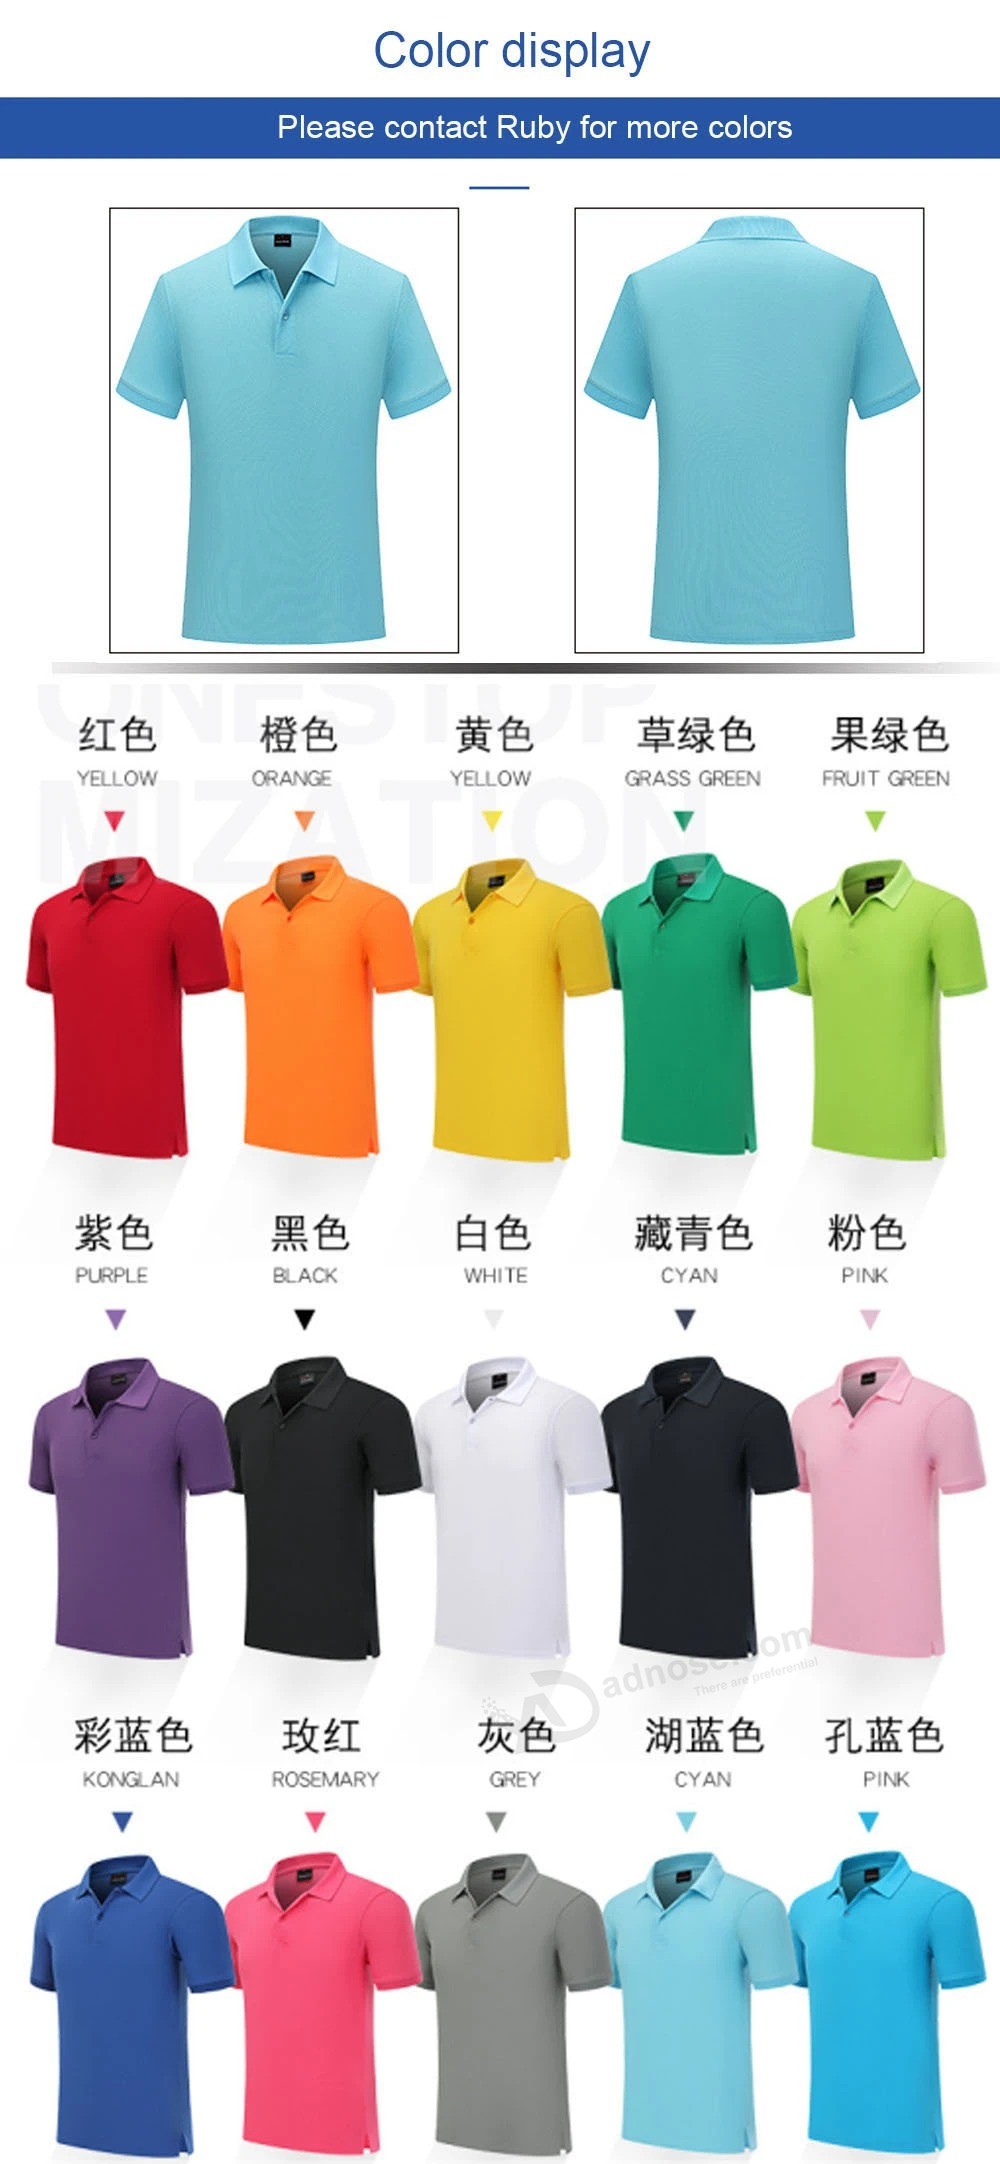 Poloshirt op maat effen kleur T-shirt katoen werkkleding korte mouwen op maat borduurwerk reclameshirt DIY gedrukt logo